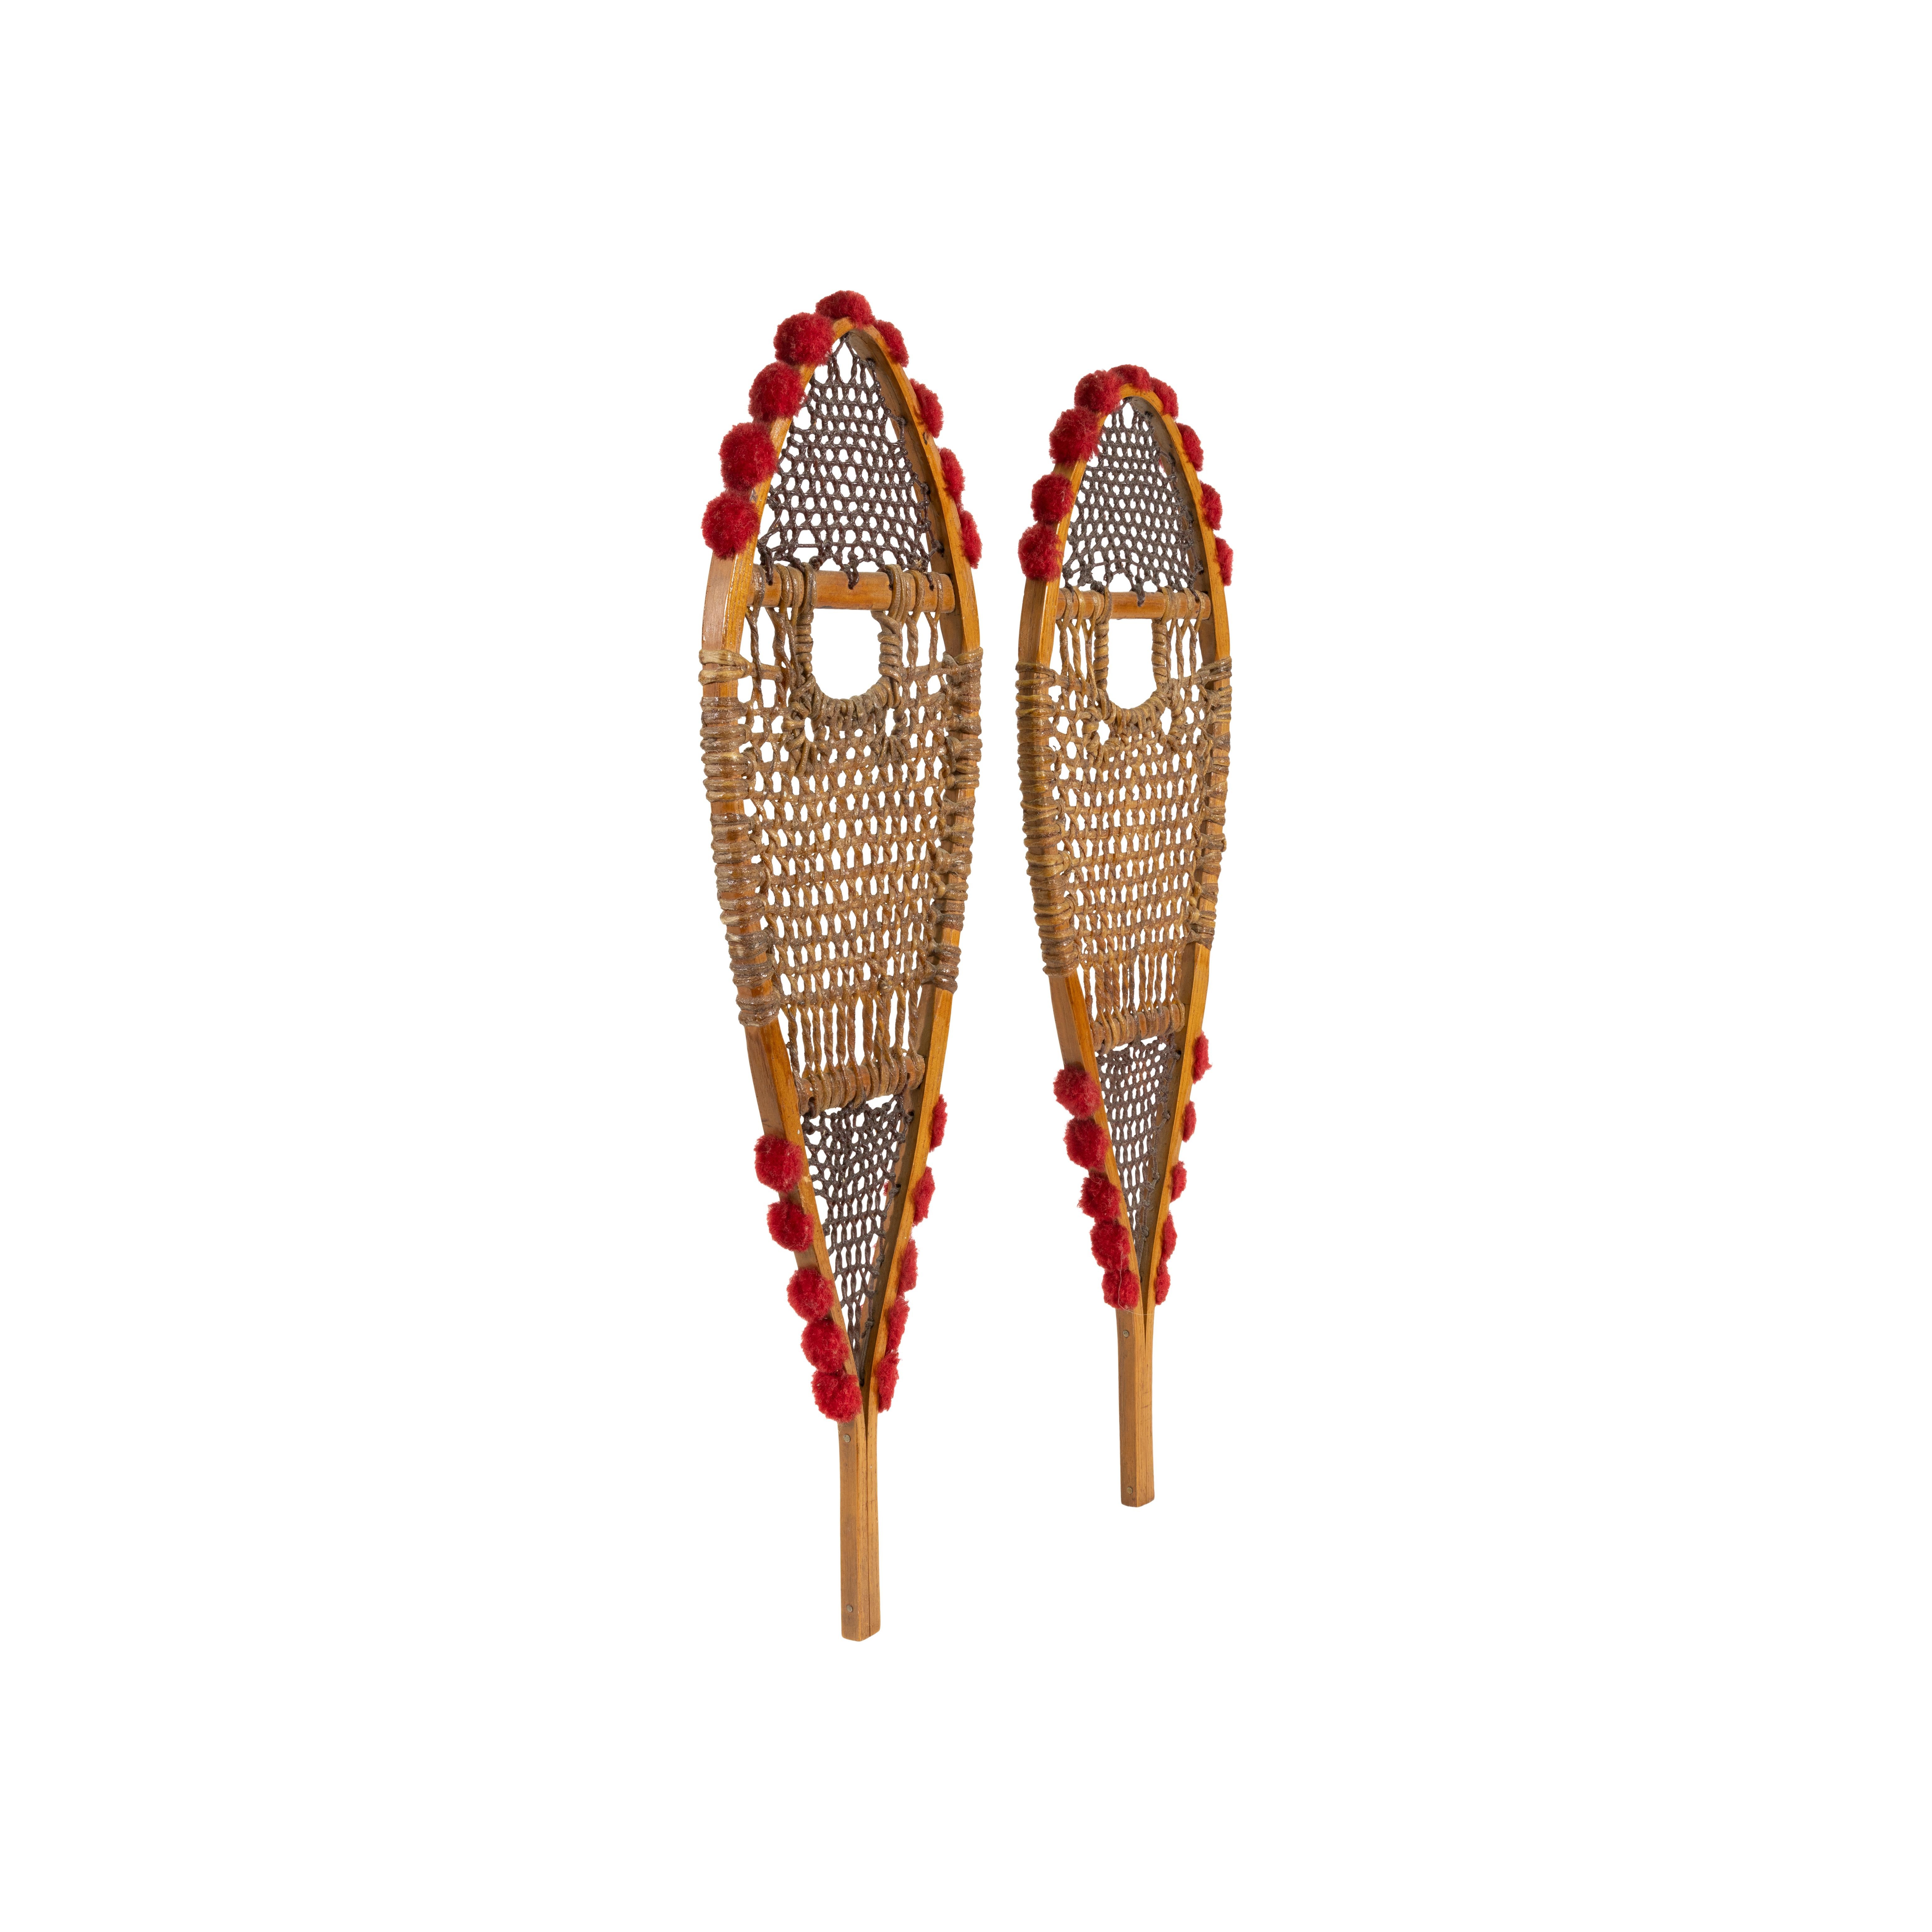 Echantillon de raquettes des Ojibwés d'Amérique du Nord. Frêne blanc avec des tufs de laine rouge et des tendons finement tissés. 
PÉRIODE : Début du 20e siècle
ORIGINE : Nord-est - Ojibwé, Amérindien
Taille : 16